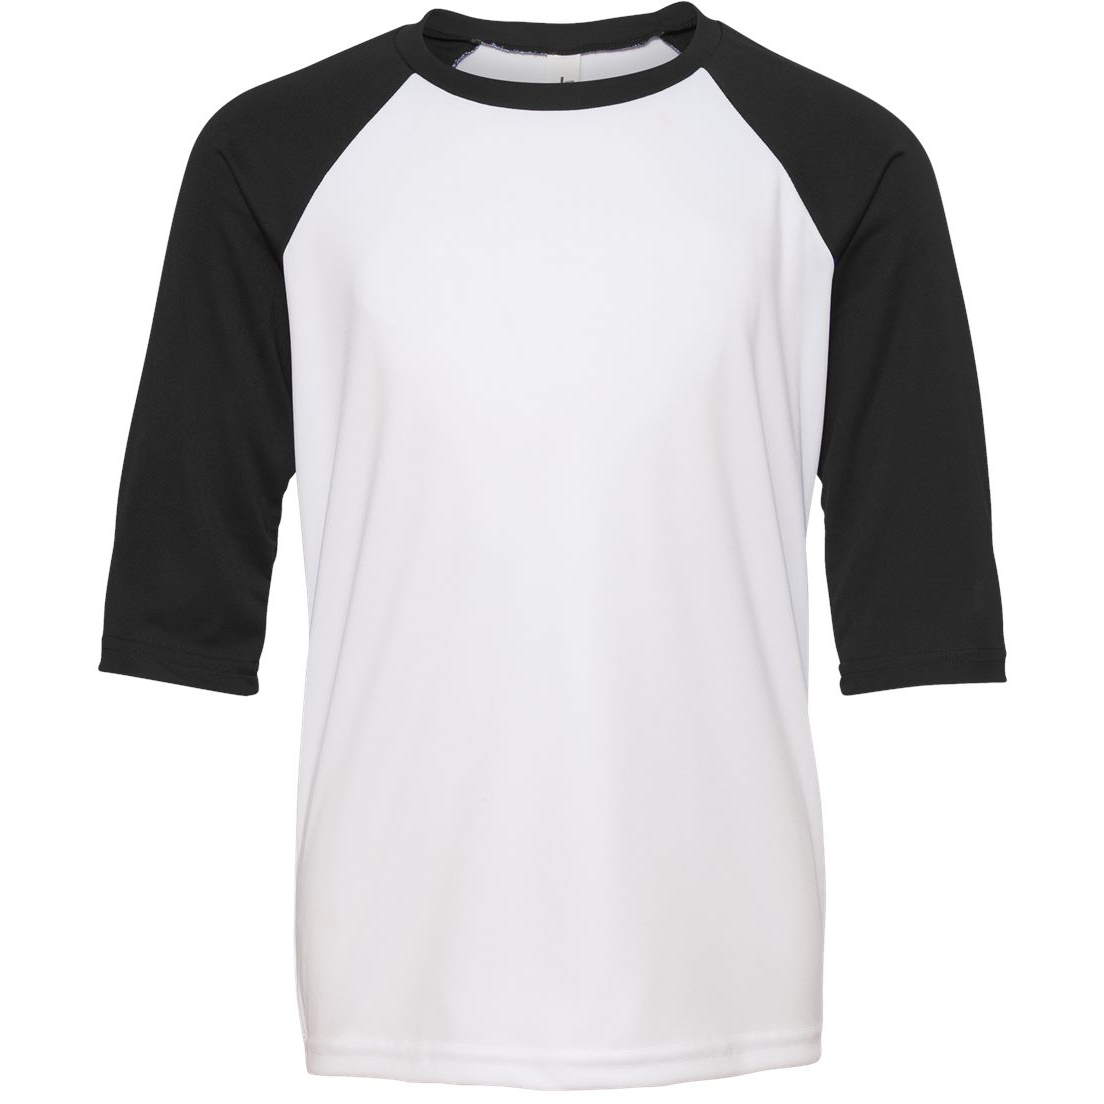 All Sport Y3229 Youth Baseball T-Shirt - White/Black | FullSource.com